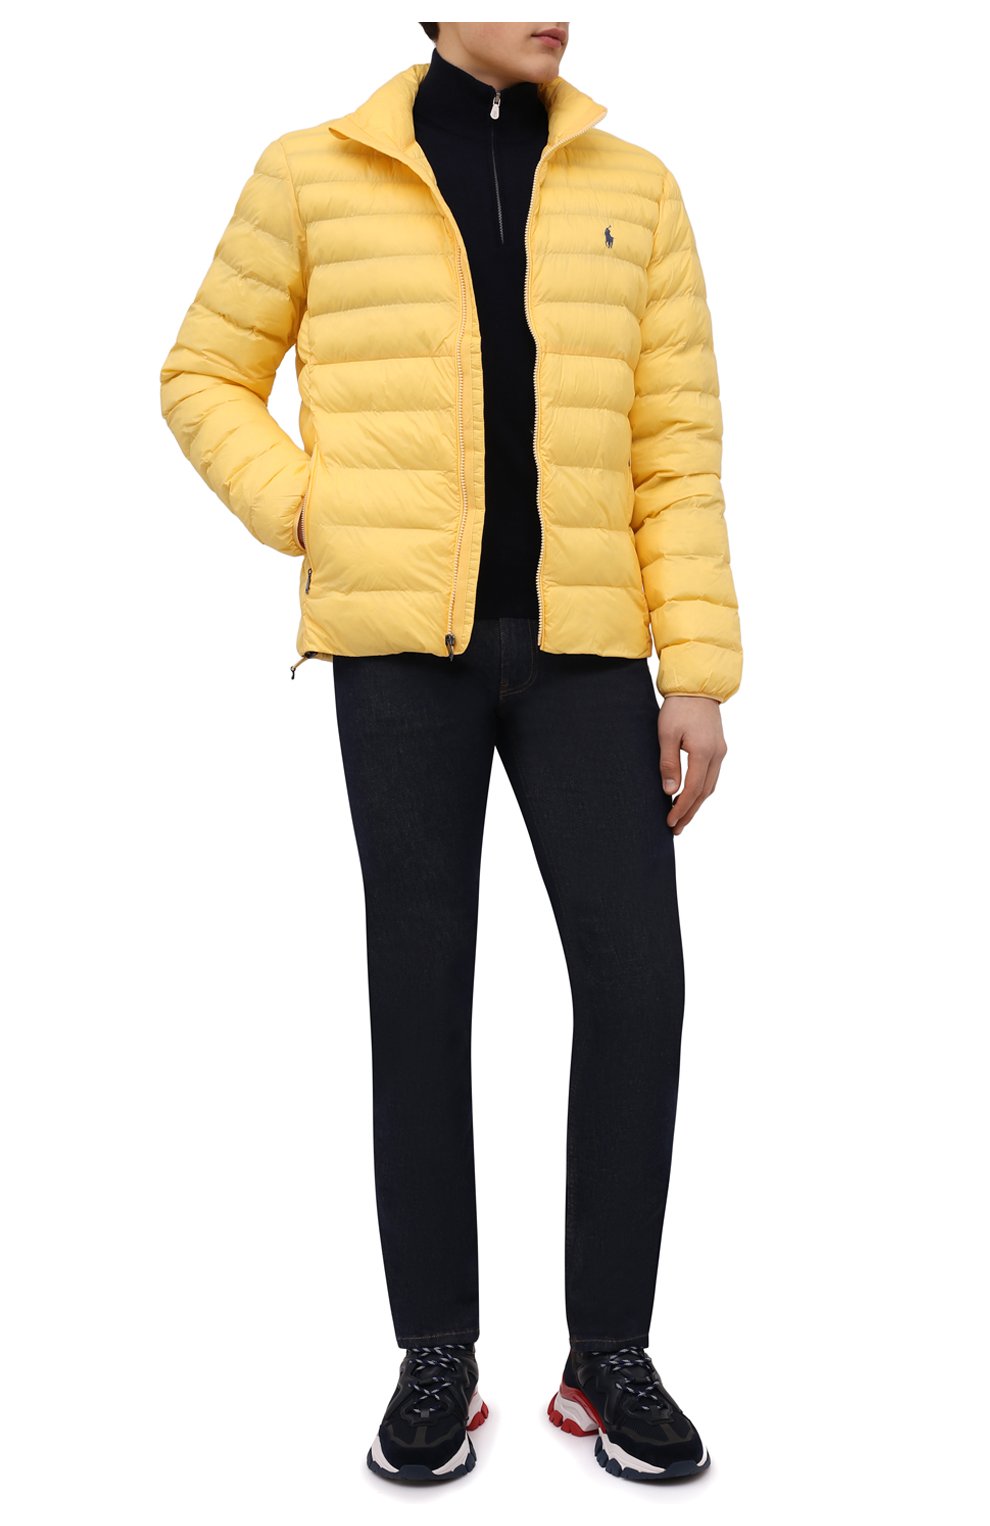 Мужская утепленная куртка POLO RALPH LAUREN желтого цвета, арт. 710810897 | Фото 2 (Кросс-КТ: Куртка; Рукава: Длинные; Материал внешний: Синтетический материал; Мужское Кросс-КТ: утепленные куртки; Материал подклада: Синтетический материал; Длина (верхняя одежда): Короткие; Стили: Кэжуэл)